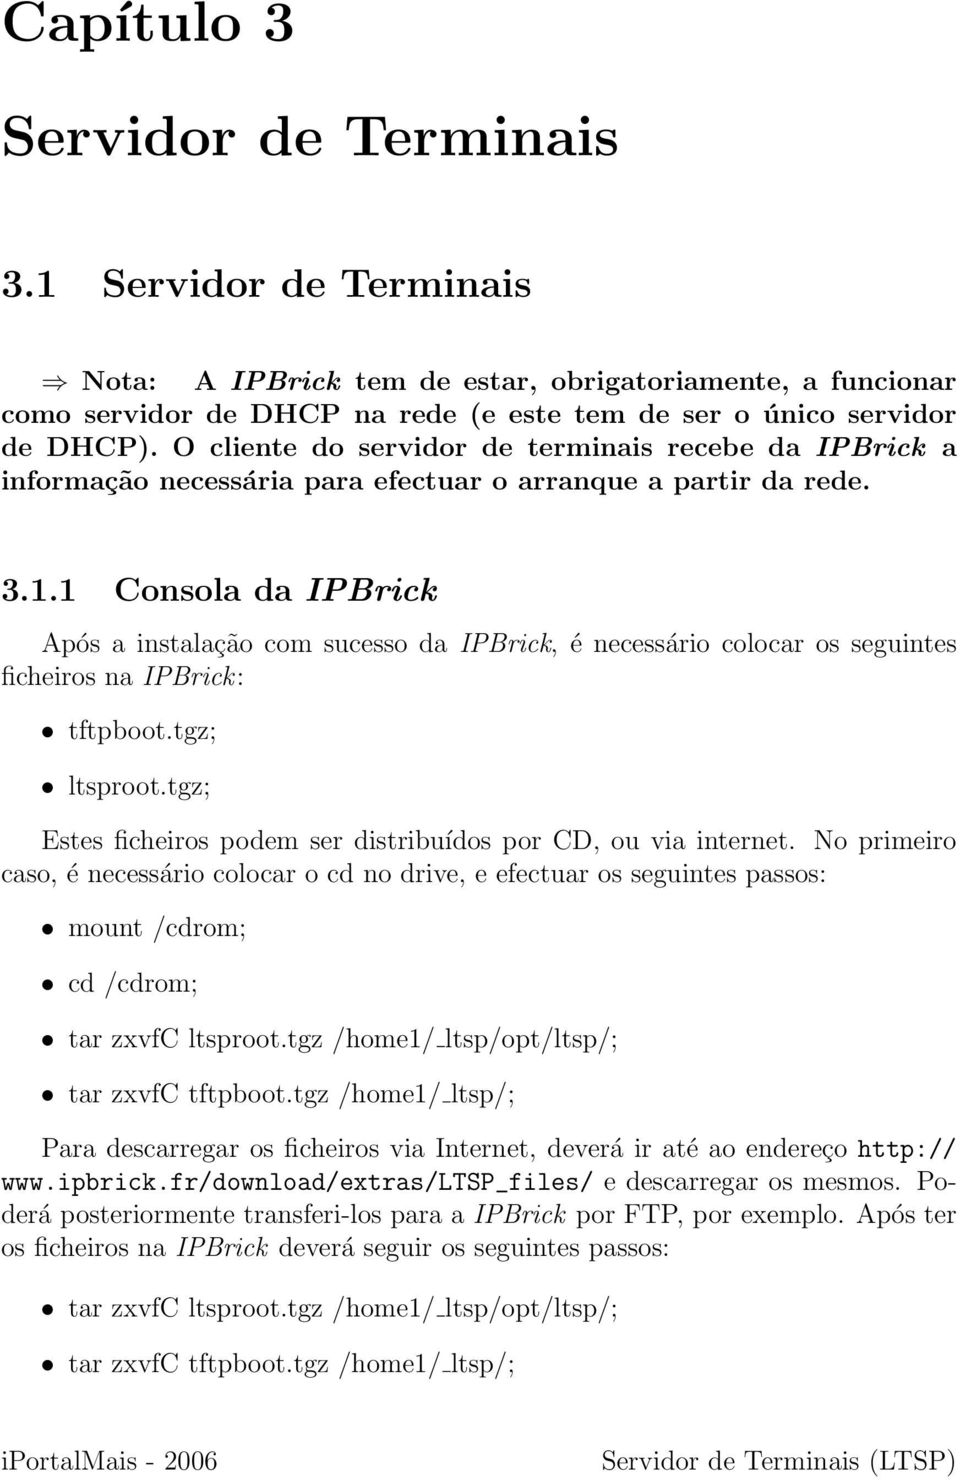 1 Consola da IPBrick Após a instalação com sucesso da IPBrick, é necessário colocar os seguintes ficheiros na IPBrick: tftpboot.tgz; ltsproot.